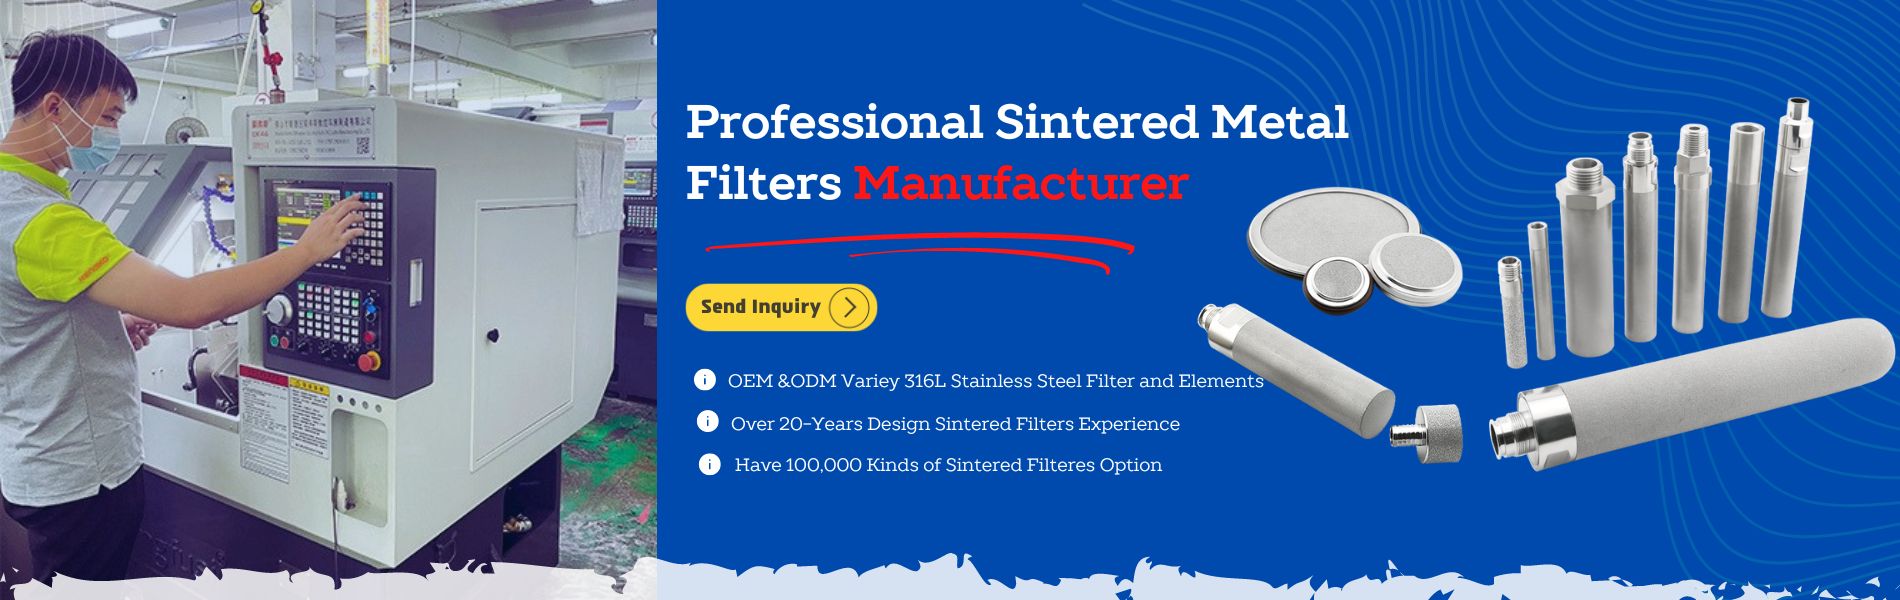 ပရော်ဖက်ရှင်နယ် Sintered Metal Filters ထုတ်လုပ်သူ